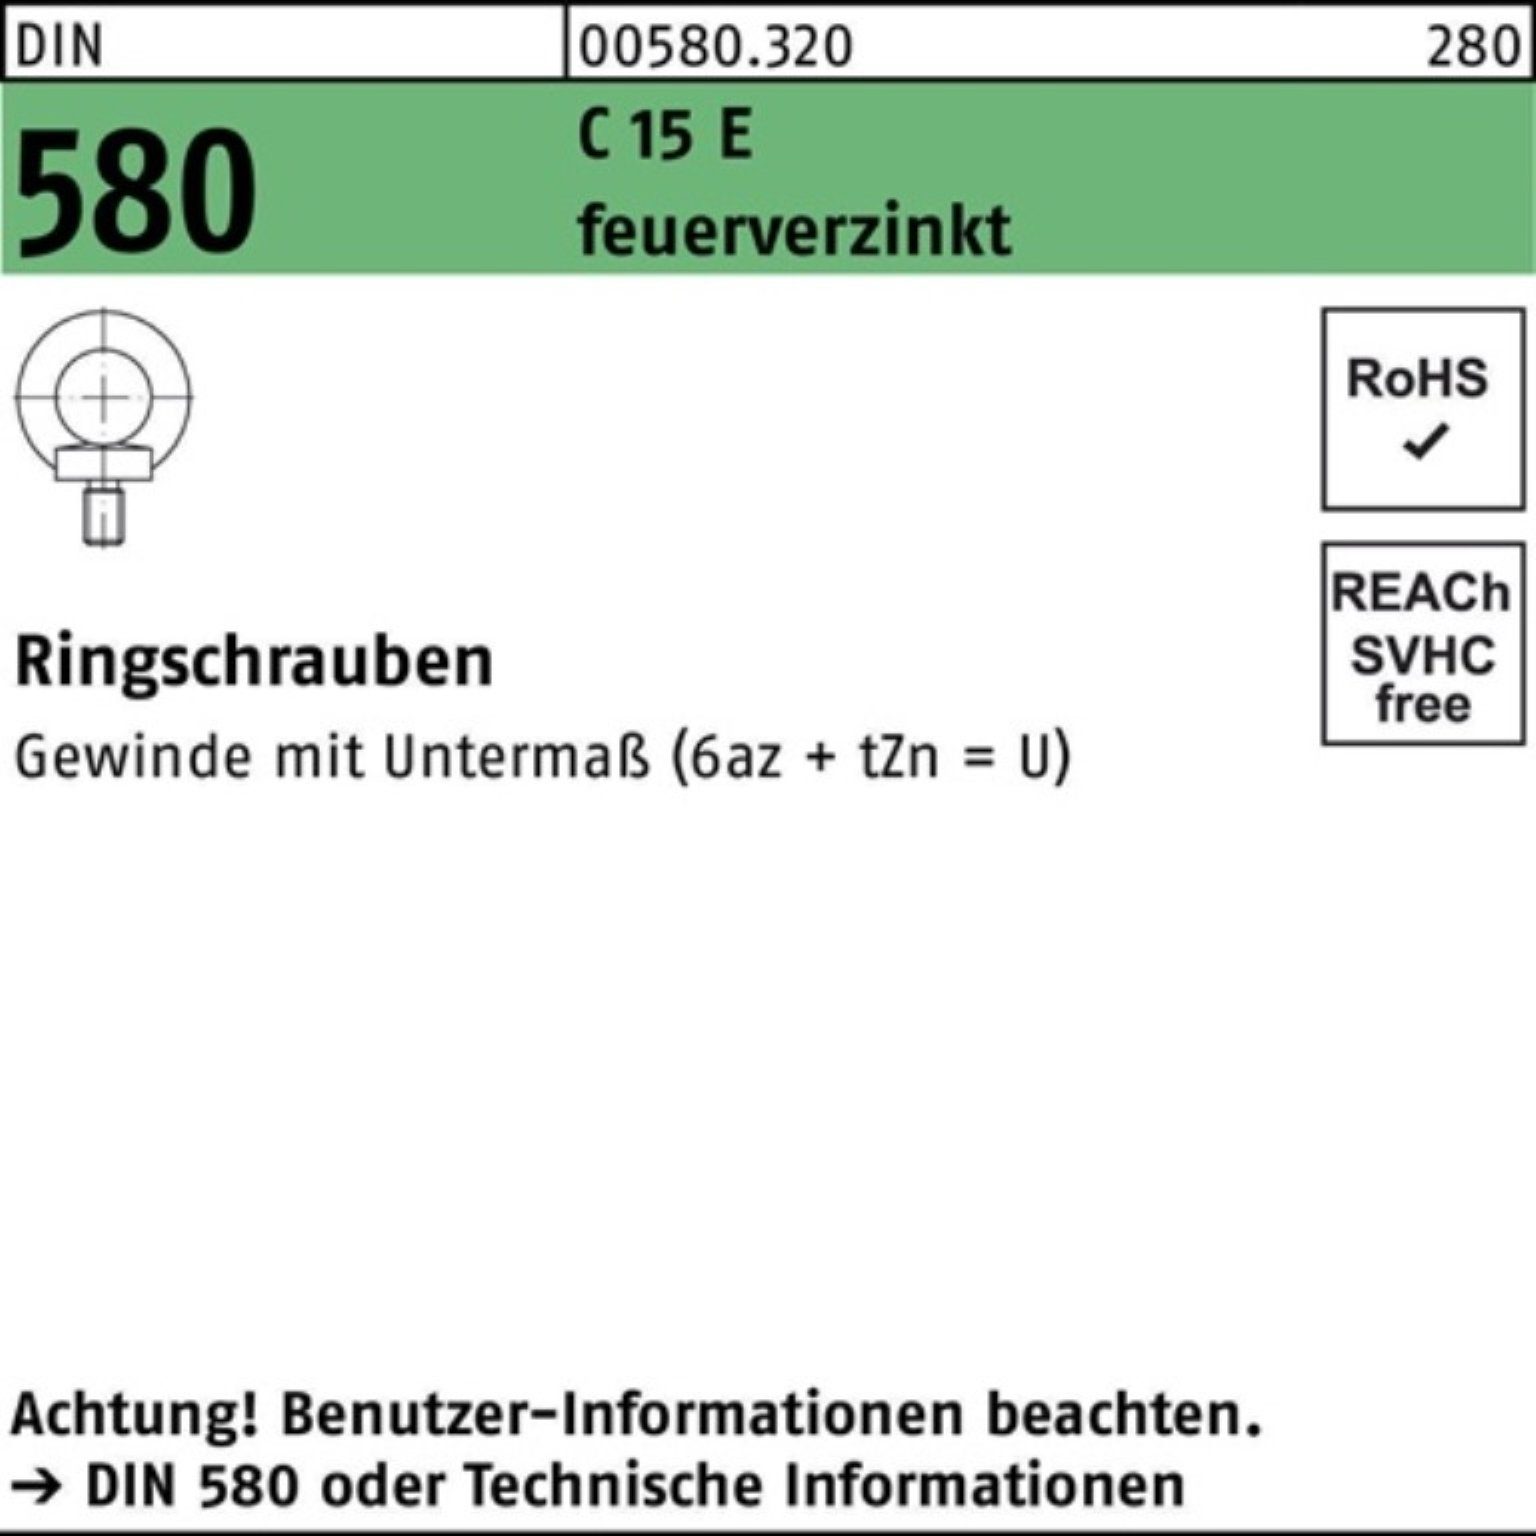 Reyher Schraube 100er Pack Ringschraube DIN 580 M10 C 15 E feuerverz. 25 Stück DIN 58